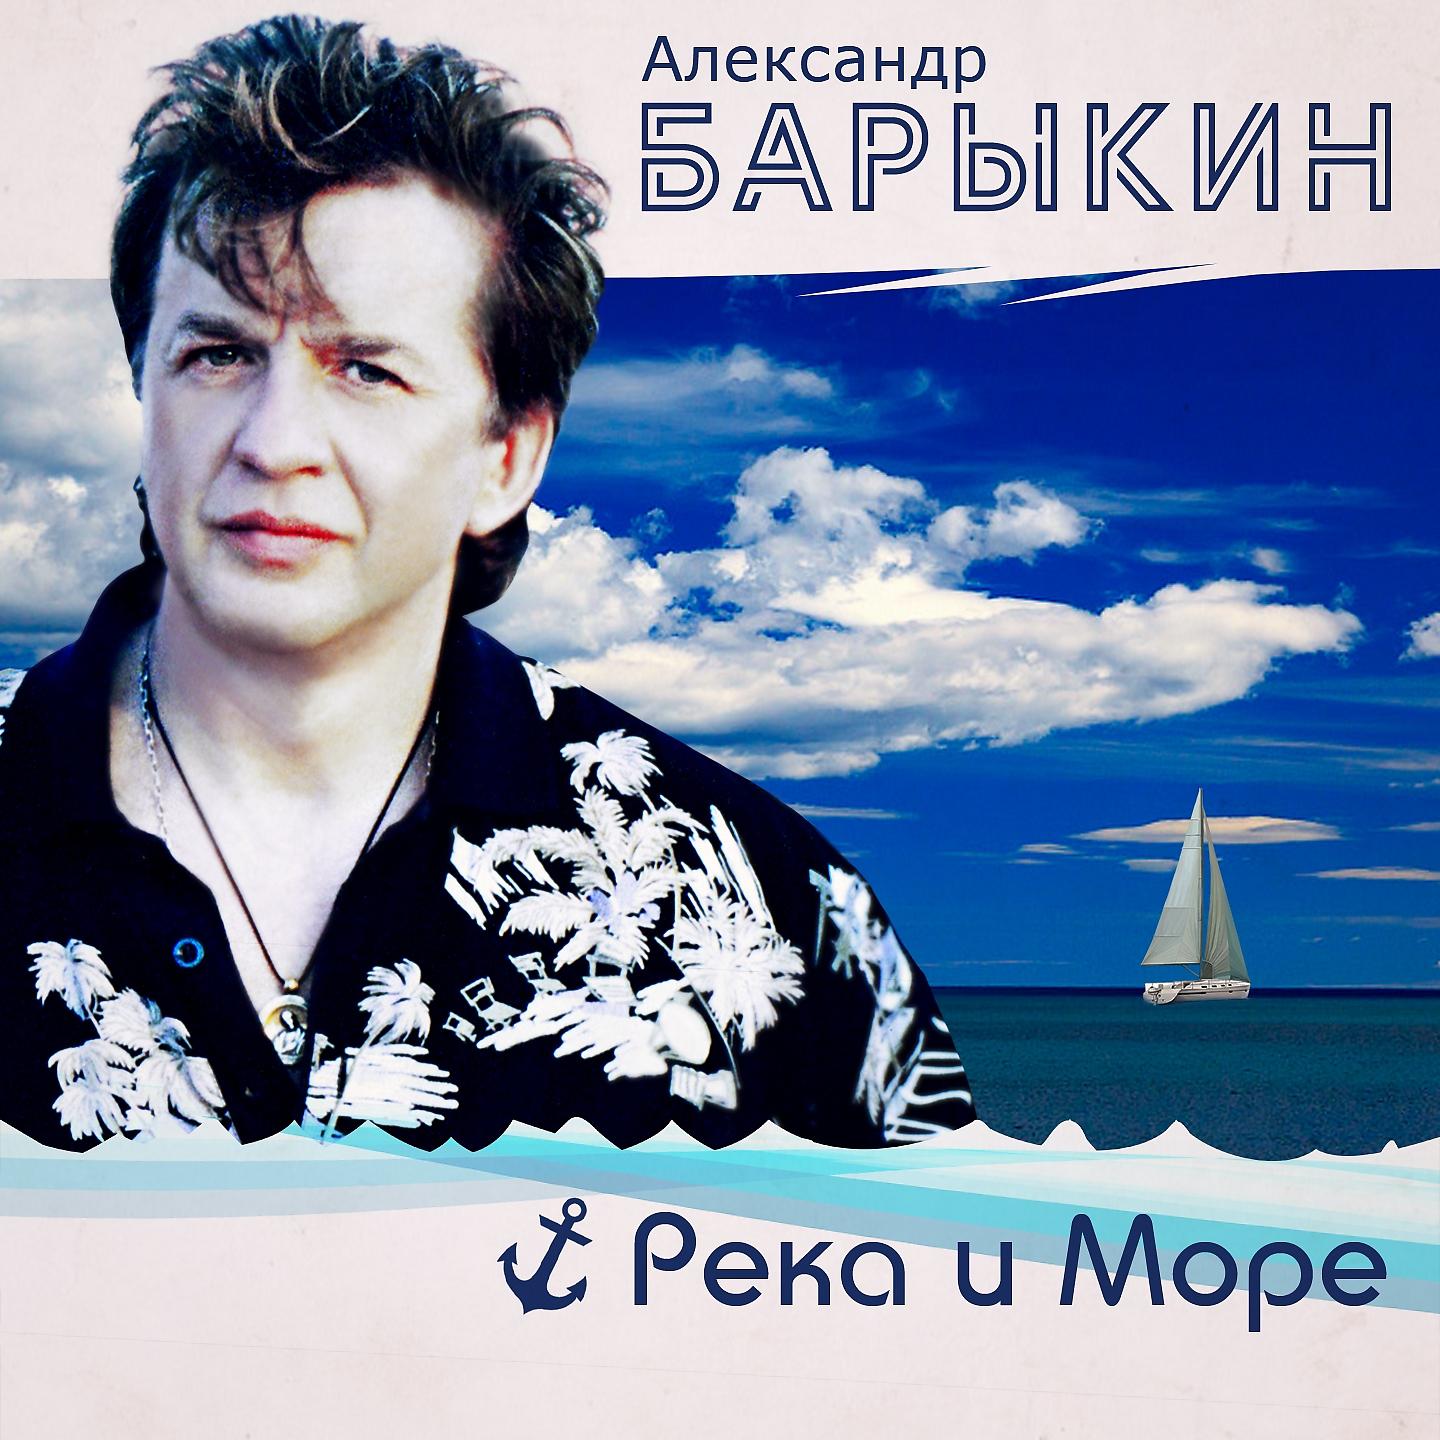 Александр Барыкин - Наша любовь